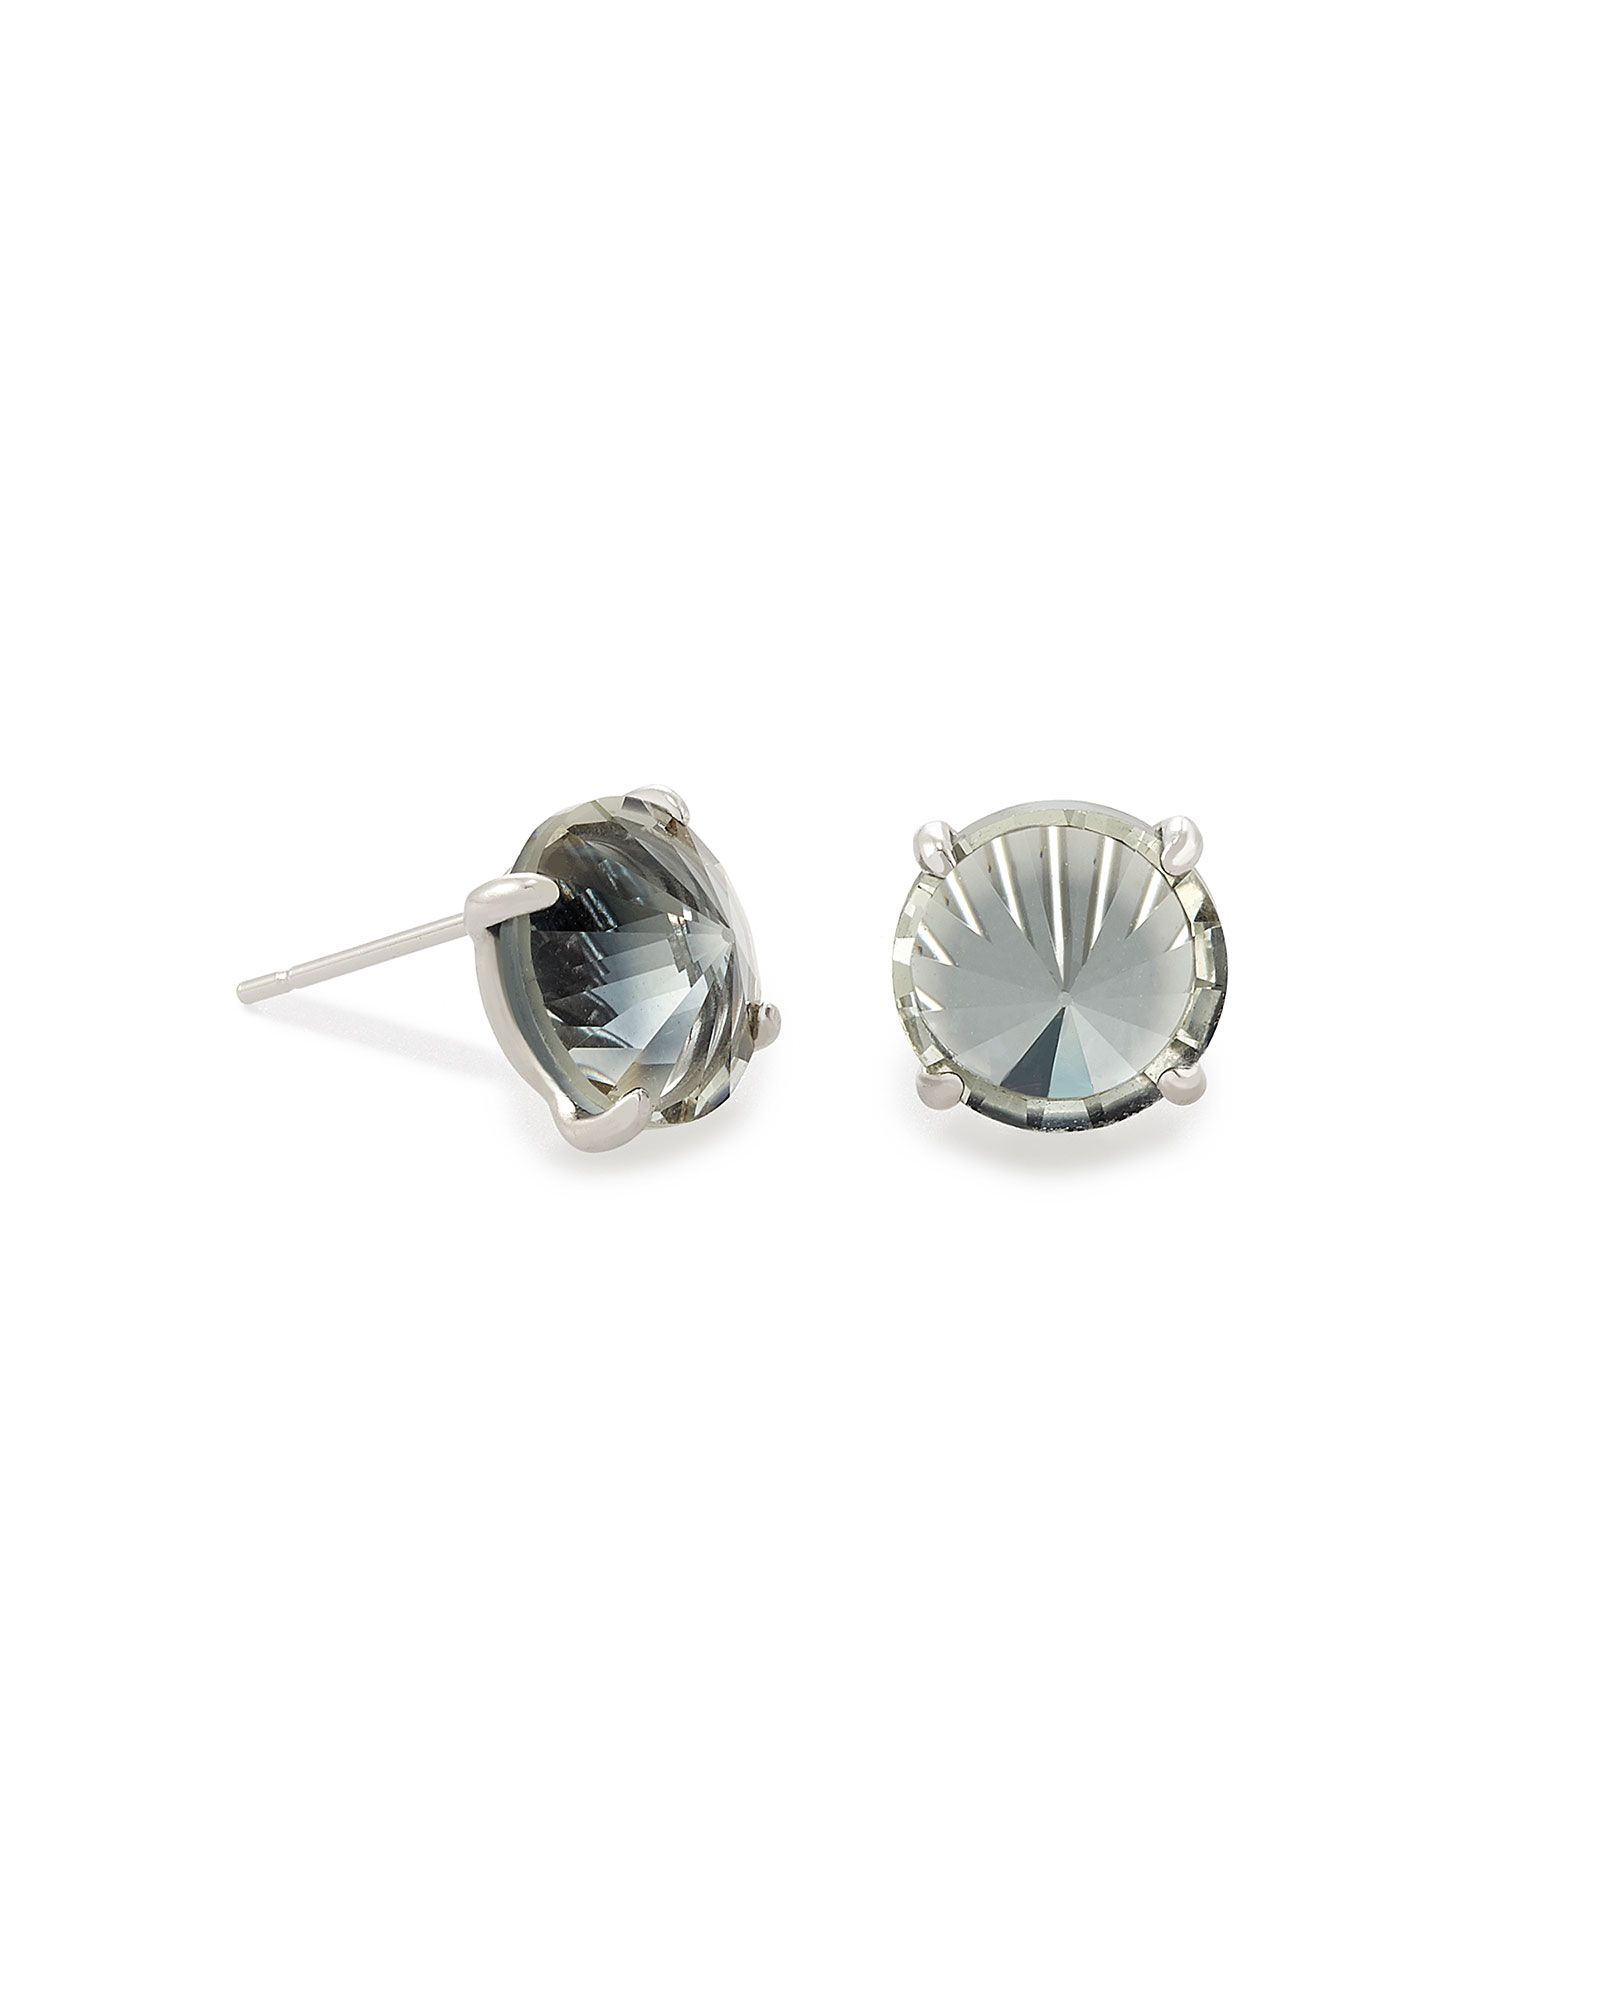 Jolie Silver Stud Earrings in Charcoal Gray Ombre | Kendra Scott